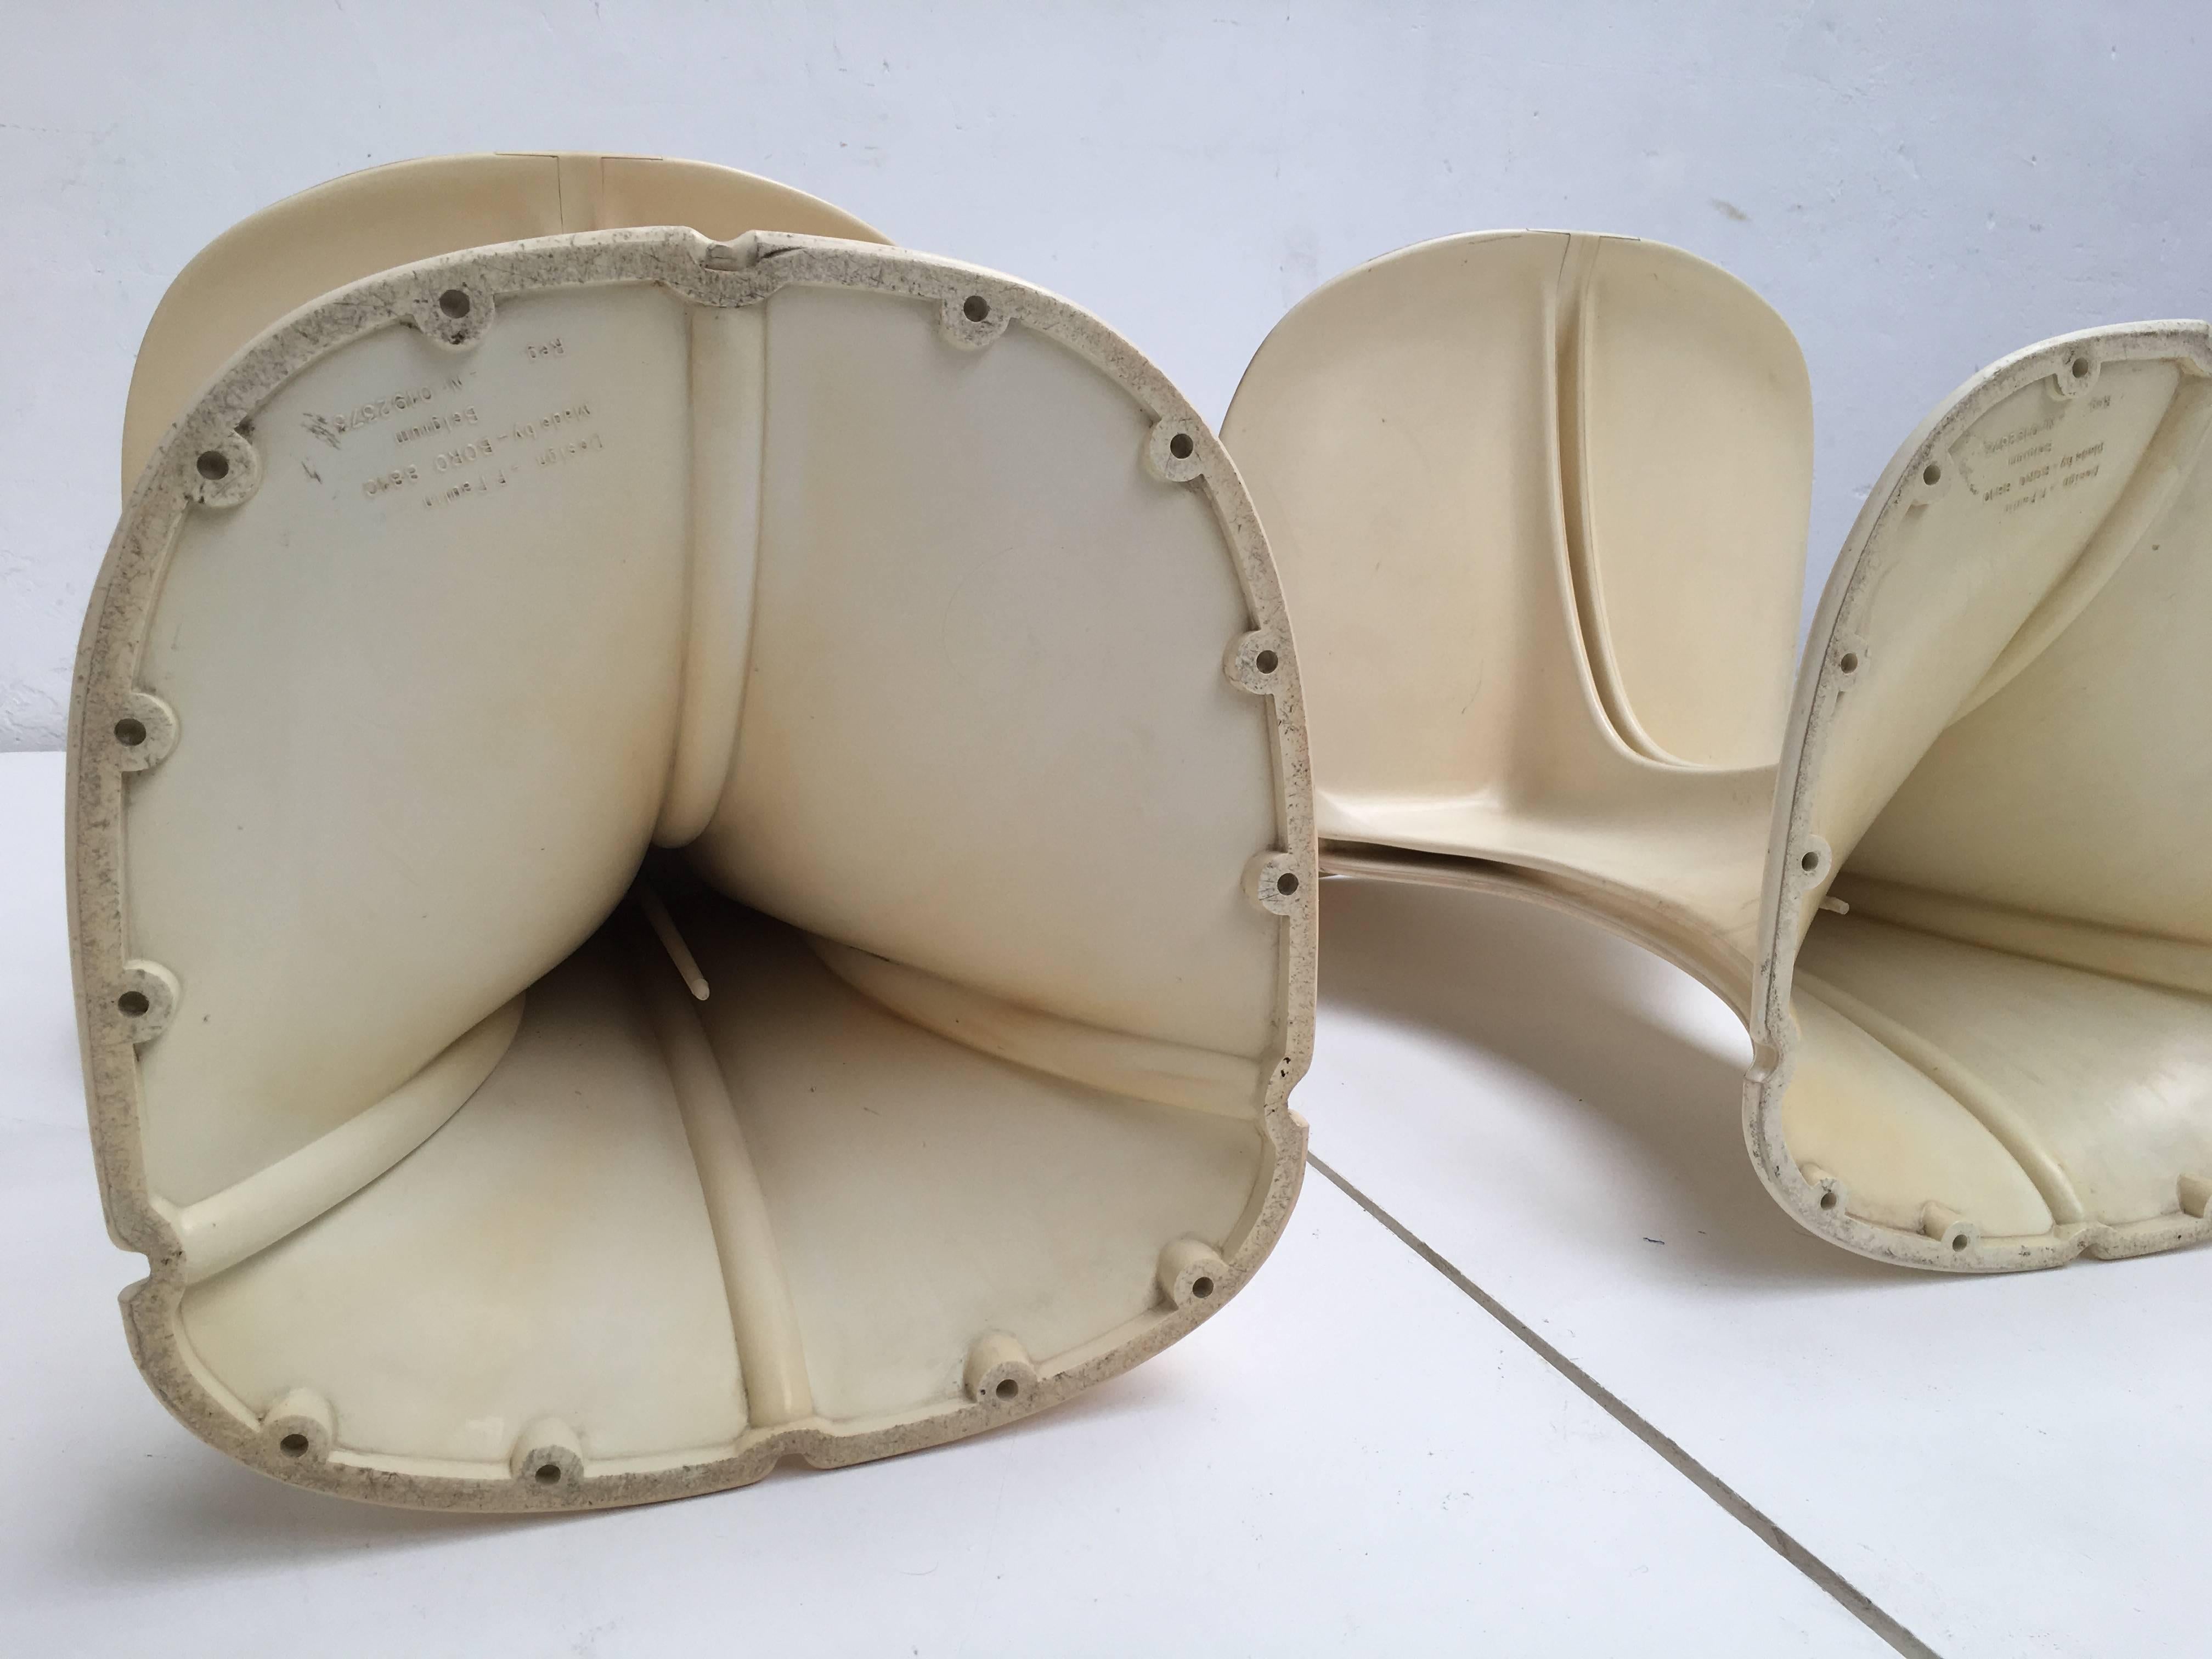 Molded Stunning Pair of Organic Pierre Paulin 8810 Flower Chairs for Boro Belgium 1973